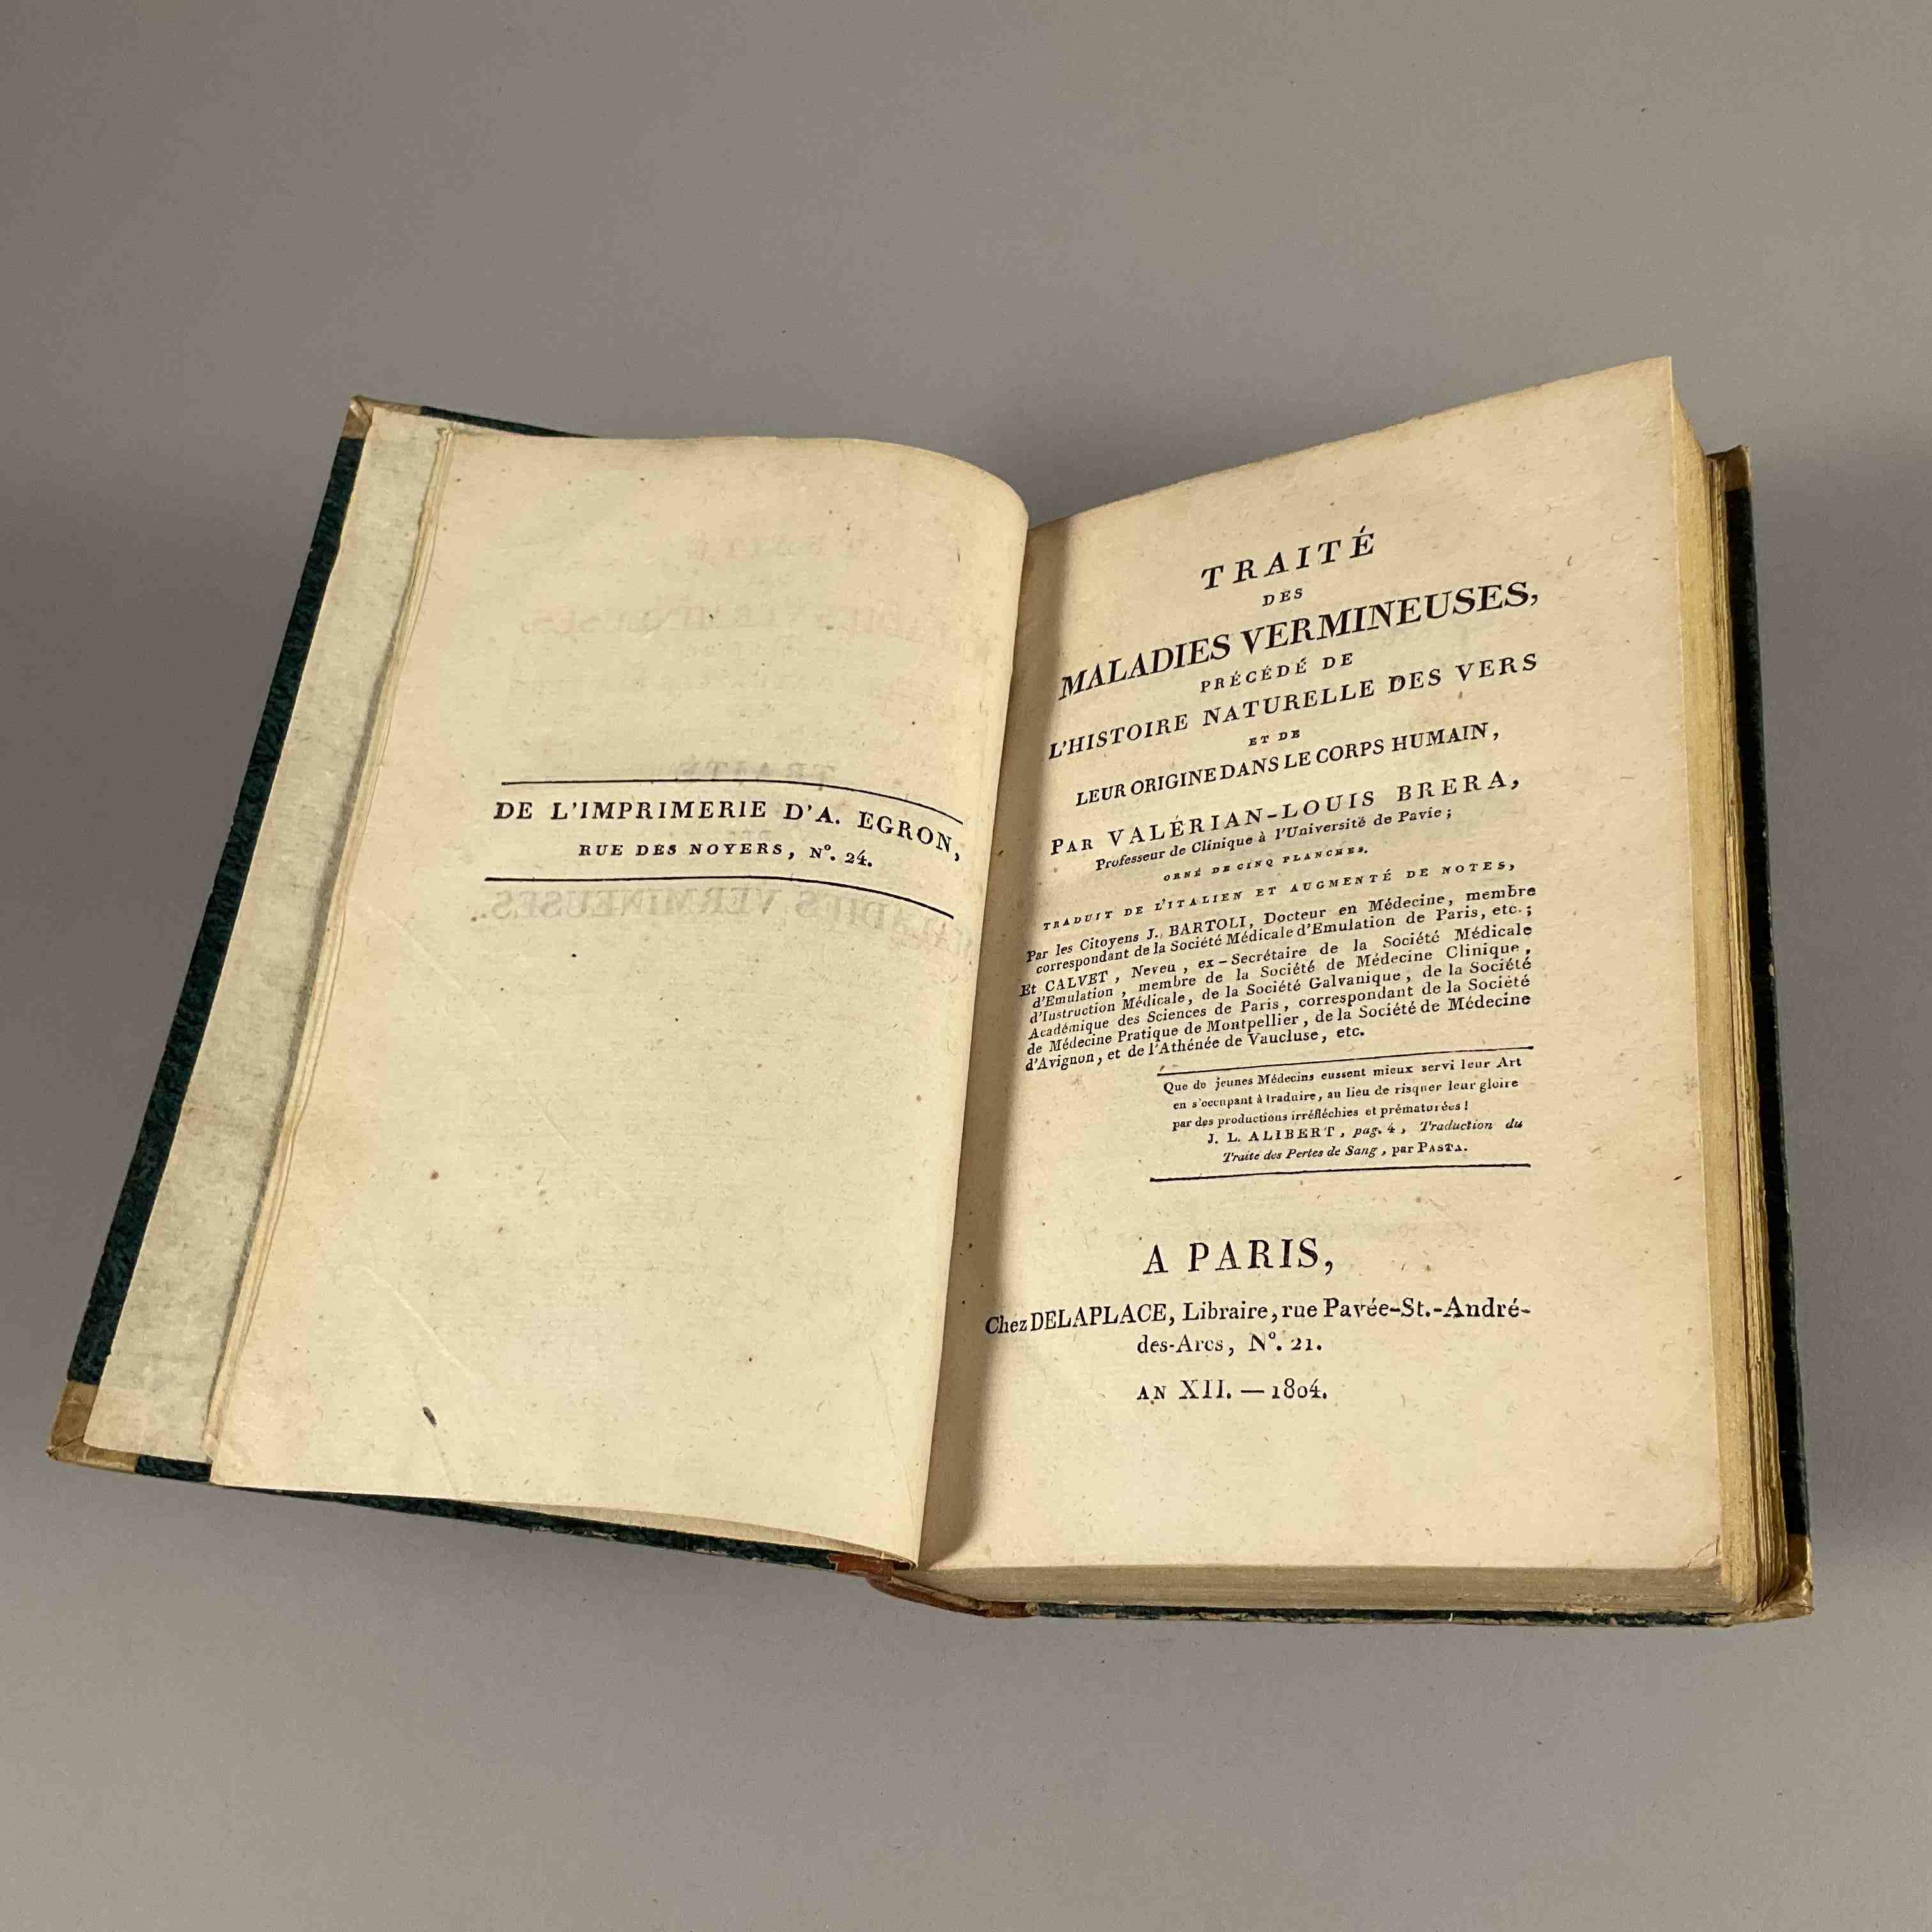 [Médecine] Valérian-Louis Brera, Traité des maladies vermineuses.Paris, Delaplace, an XII-1804....